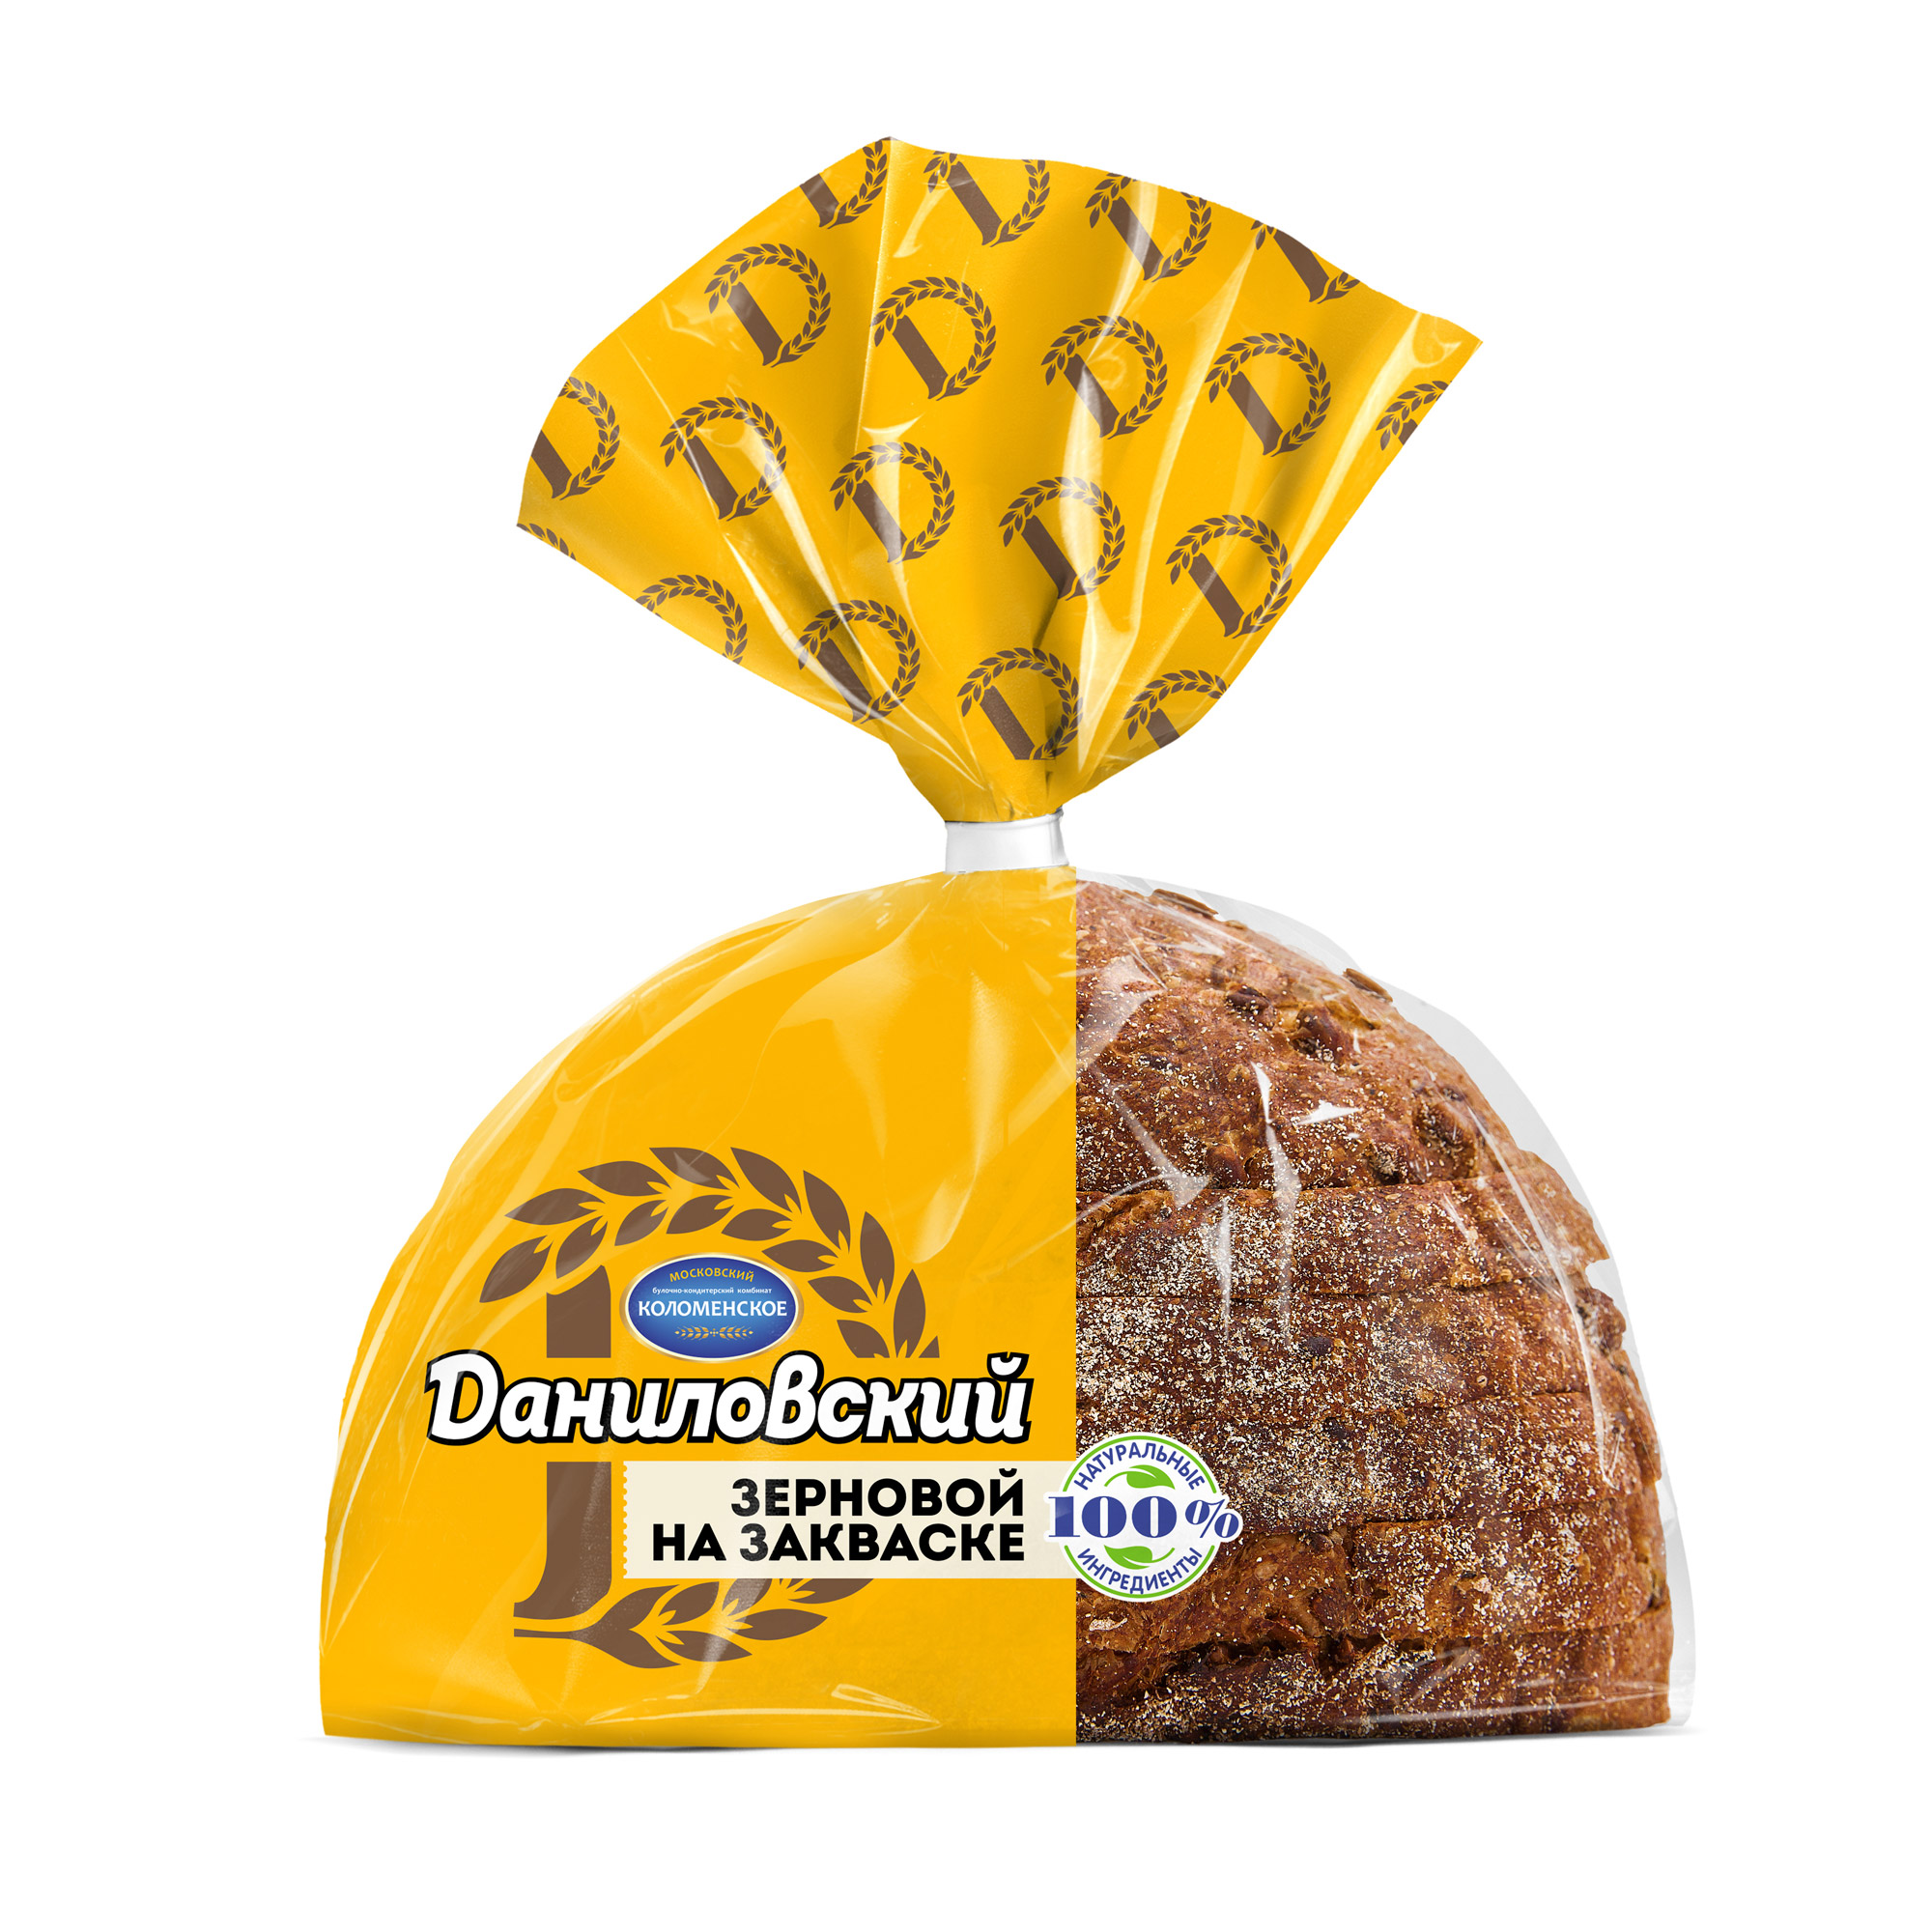 Хлеб Даниловский зерновой в нарезке 300 г хлеб даниловский нарезной зерновой 300 г